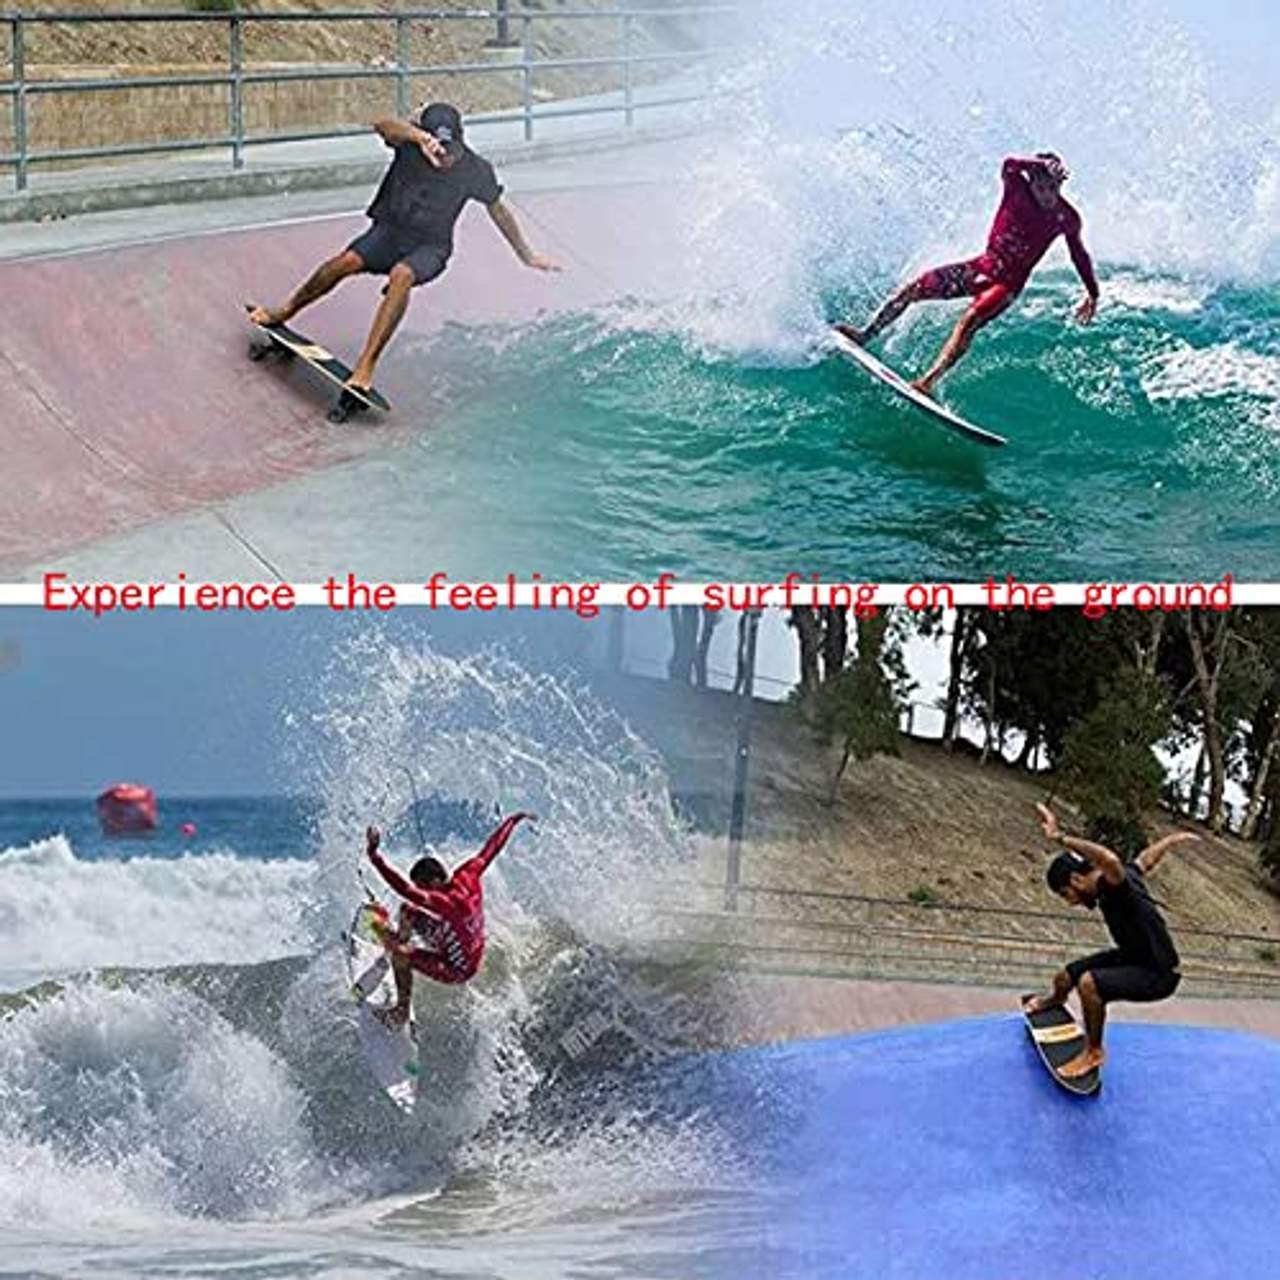 Carver Skateboard Pumping Cruiser Surfskate Deck Komplettes